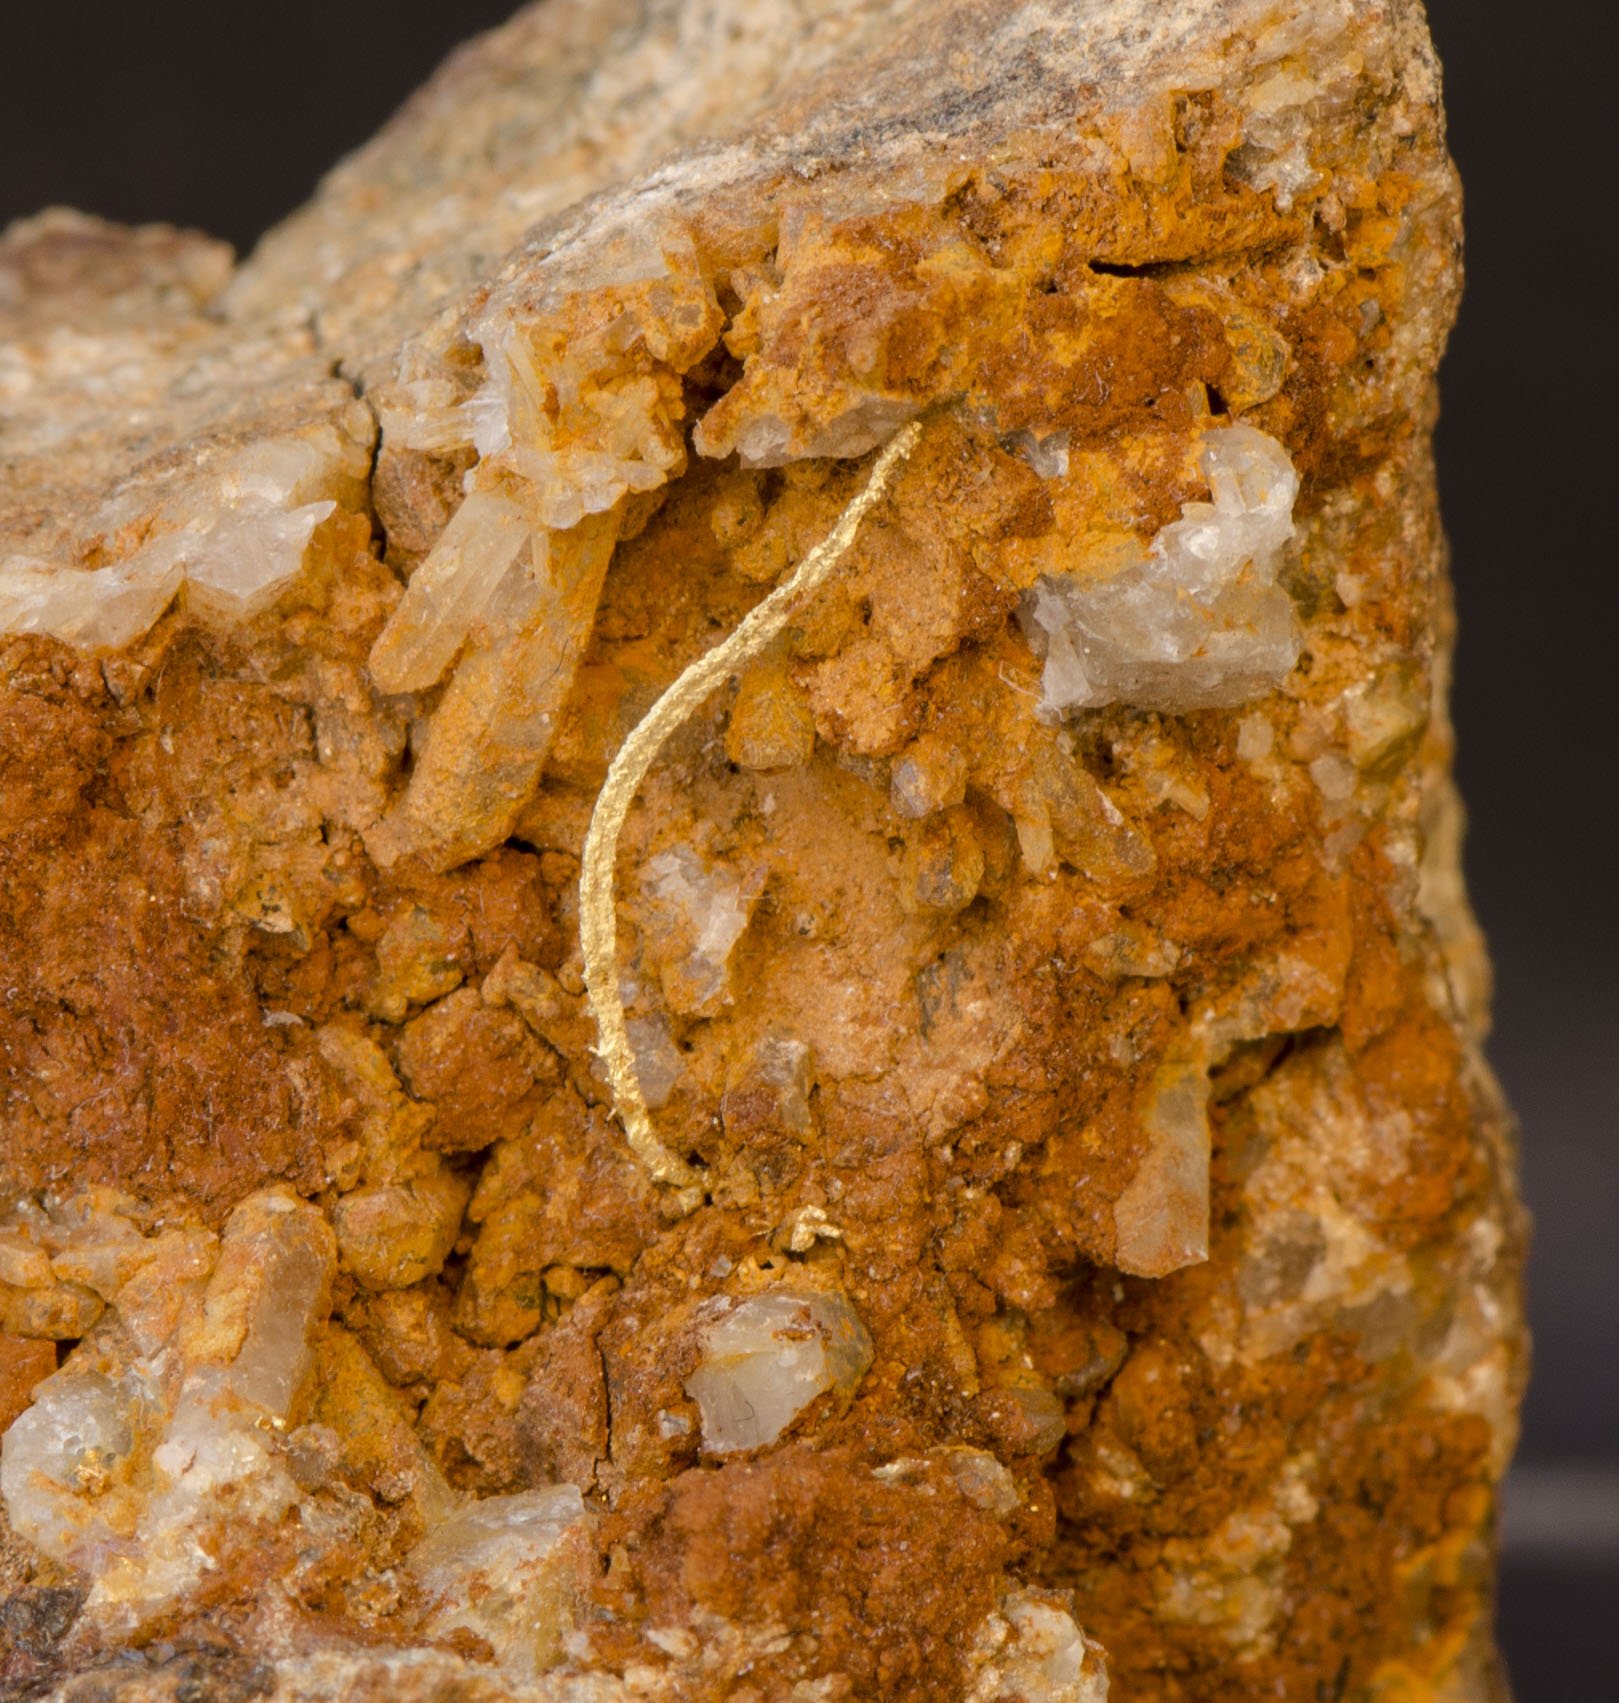 Gold wire on Quartz, Peru - Schwartz Fine Minerals